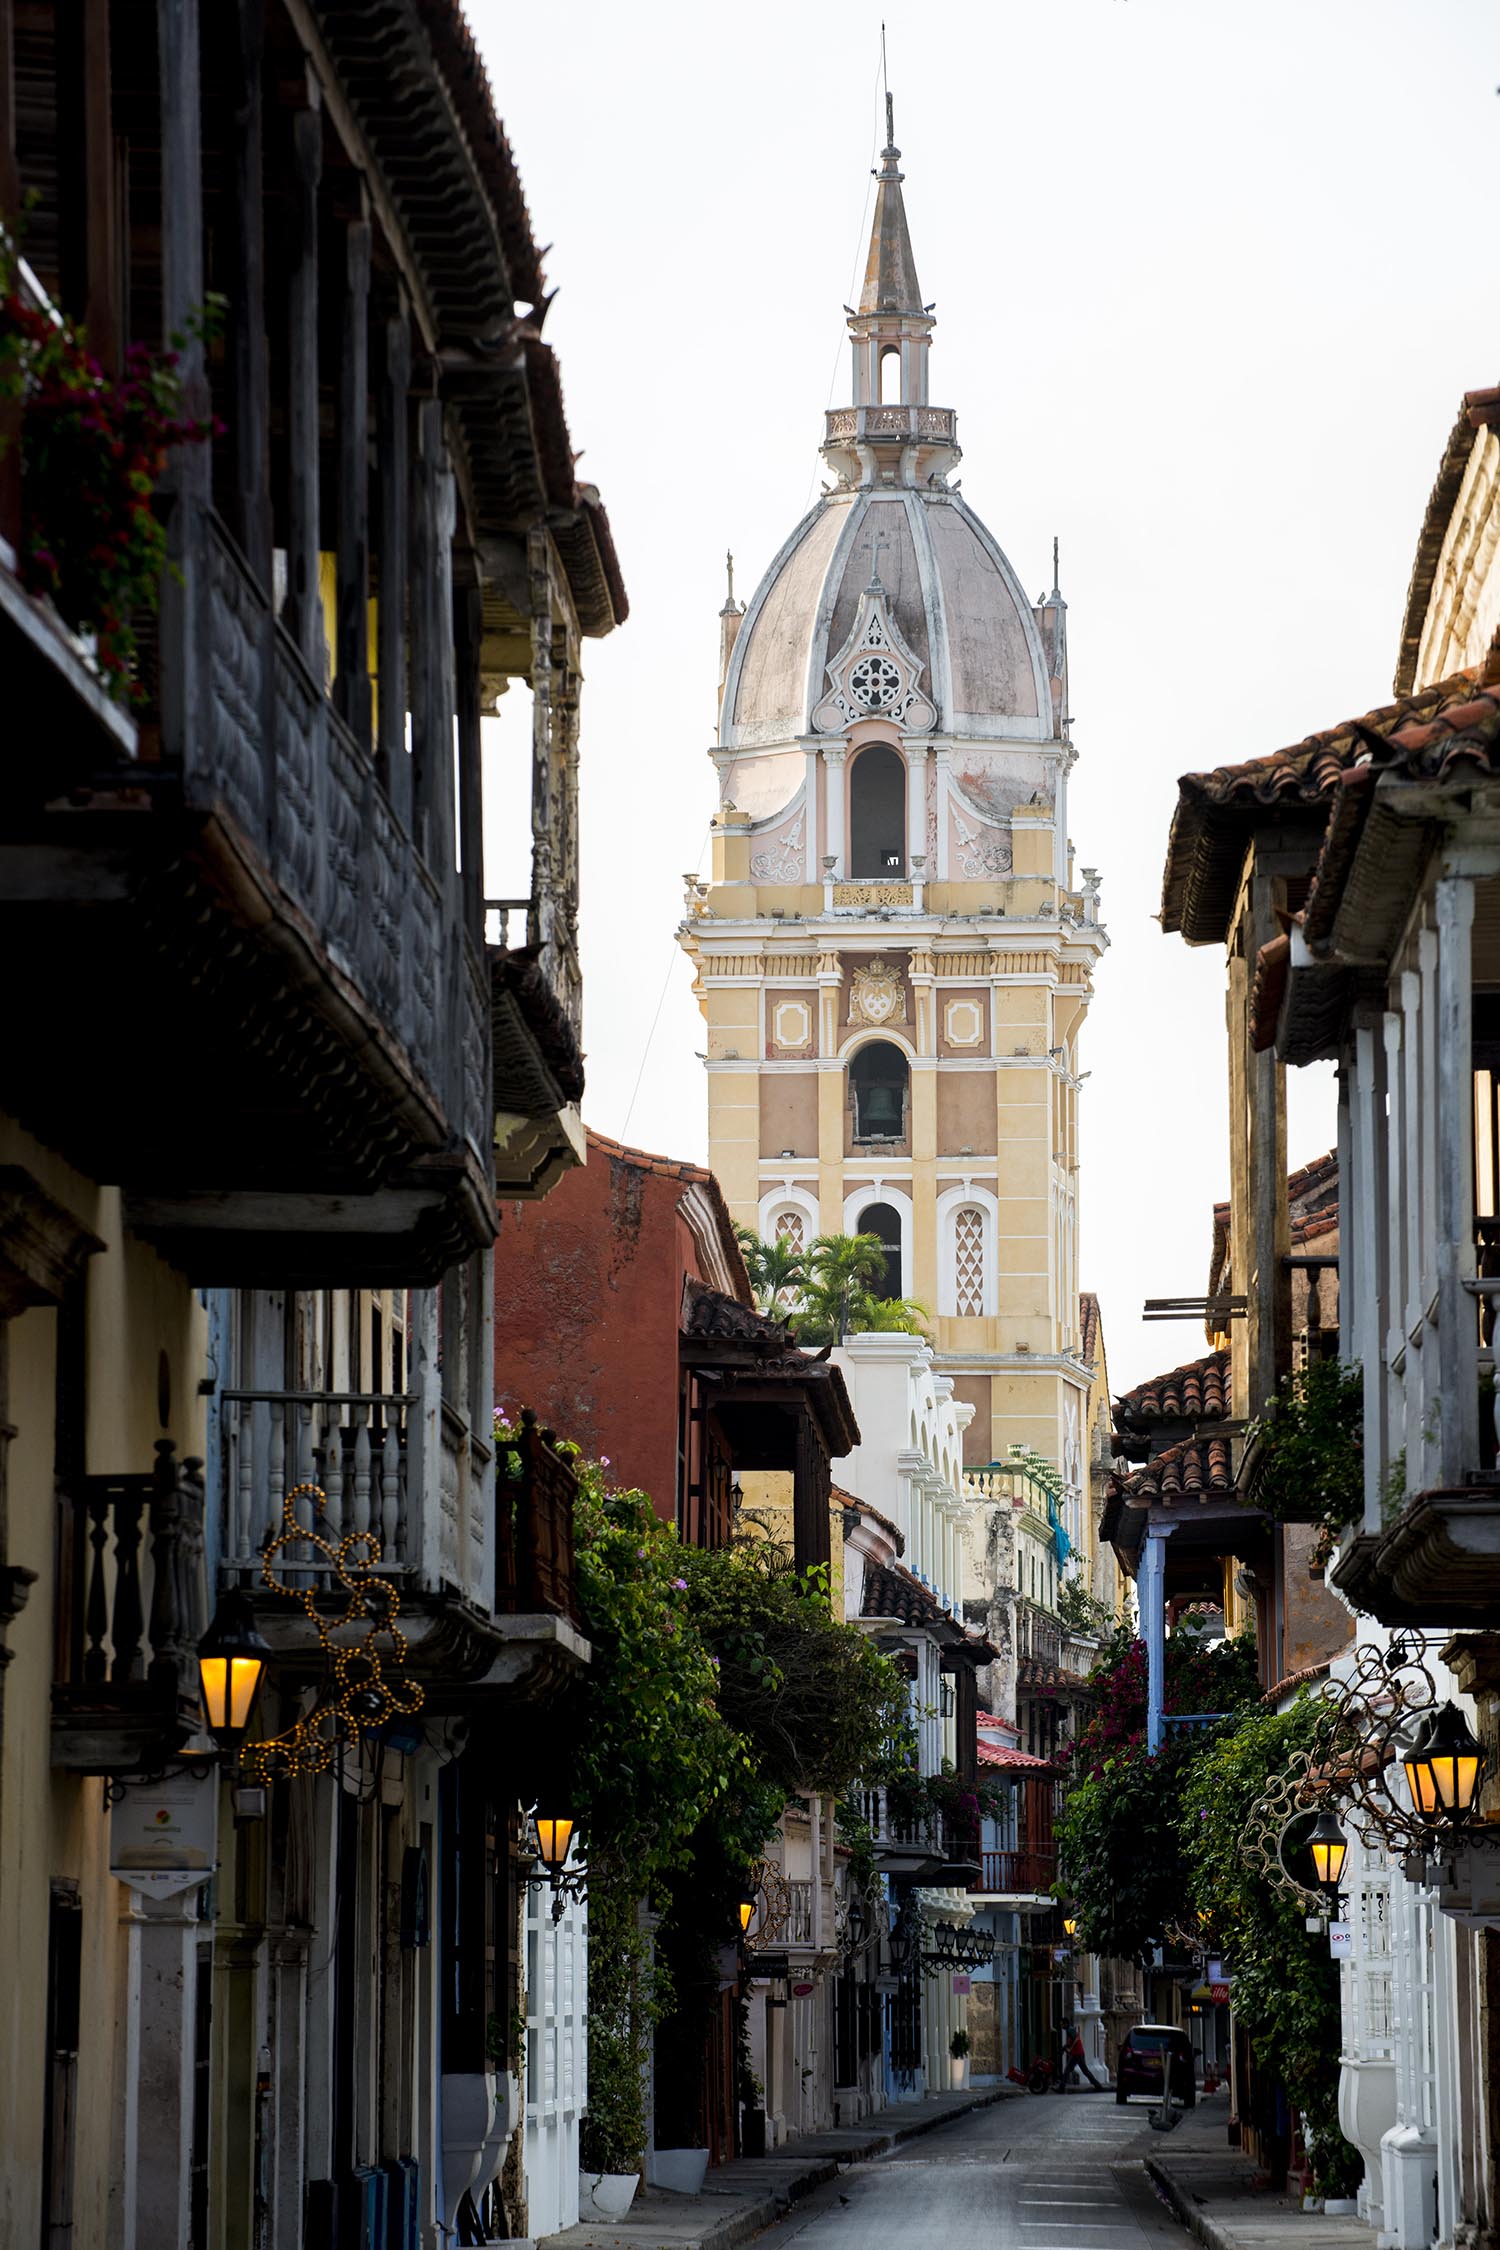  Cartagena, Colombia  